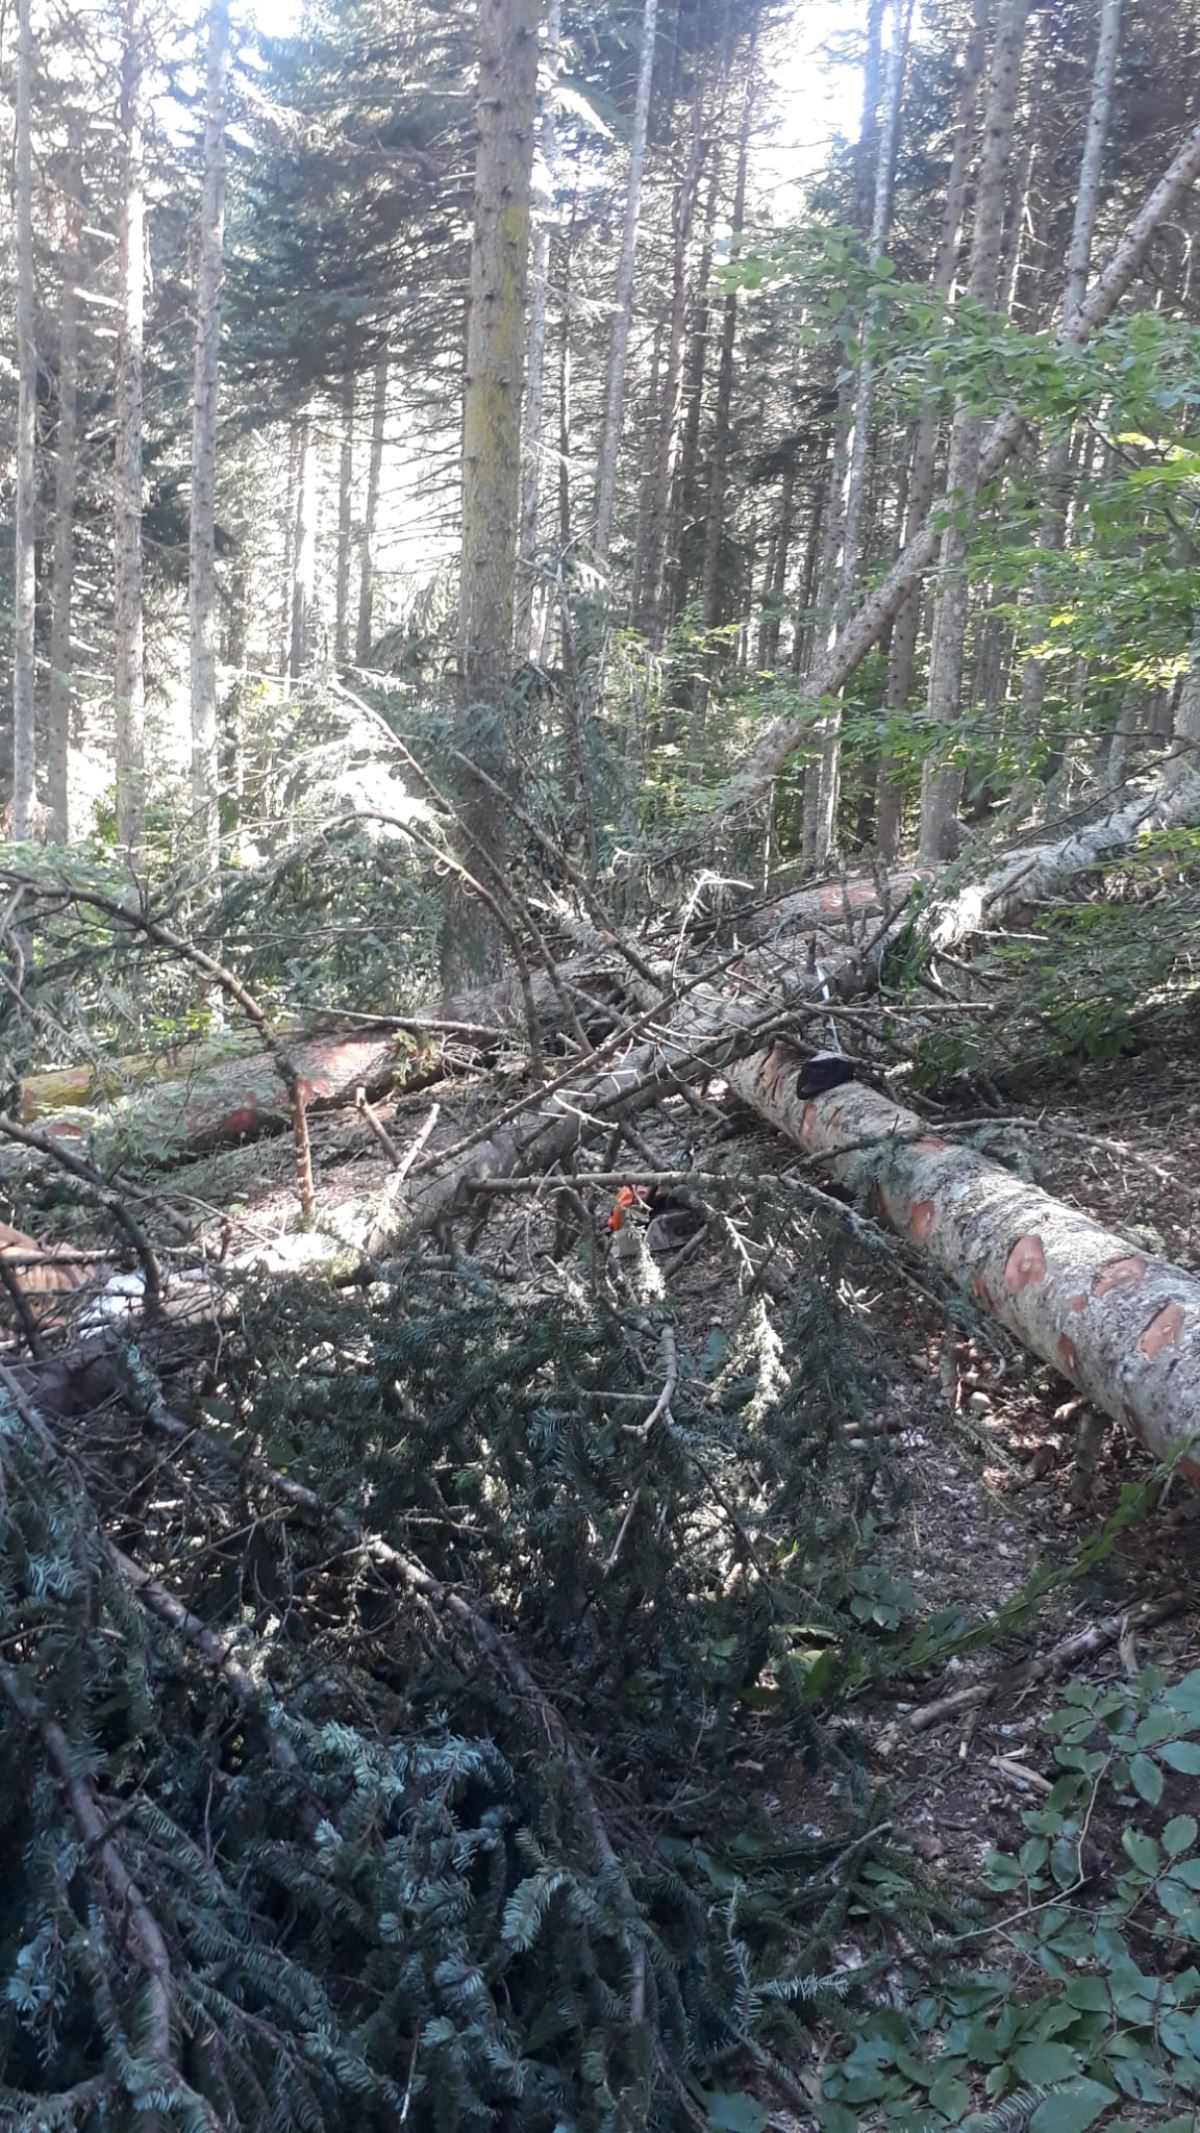 Kestiği ağacın altında kalan orman işçisi Ahmet Elik yaşamını yitirdi